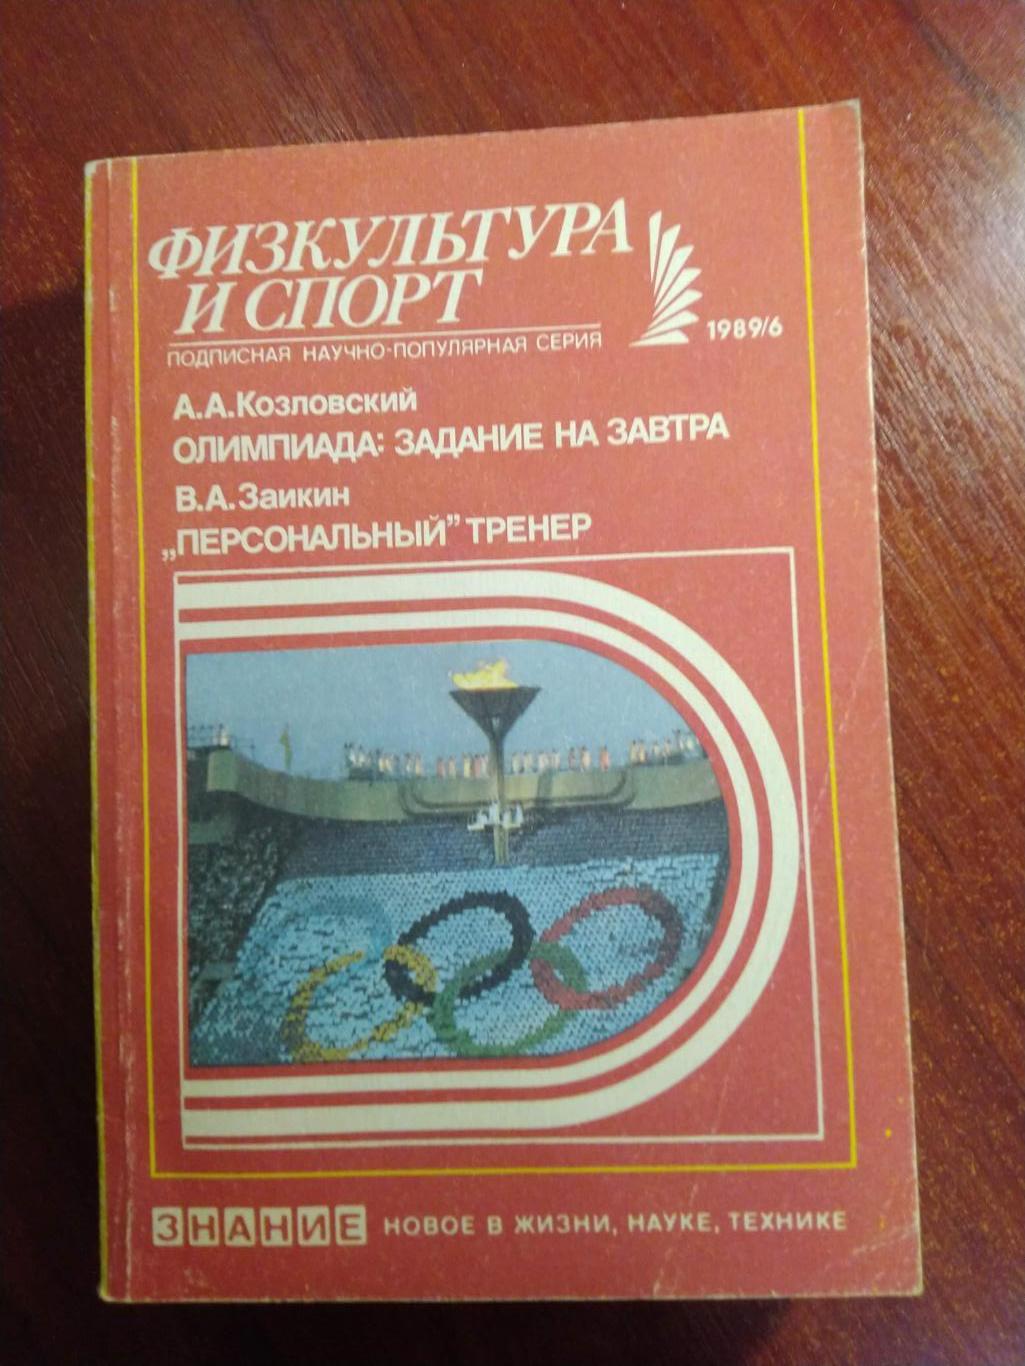 Серия Физкультура и спорт1989 №6 Олимпиада :задание на завтра